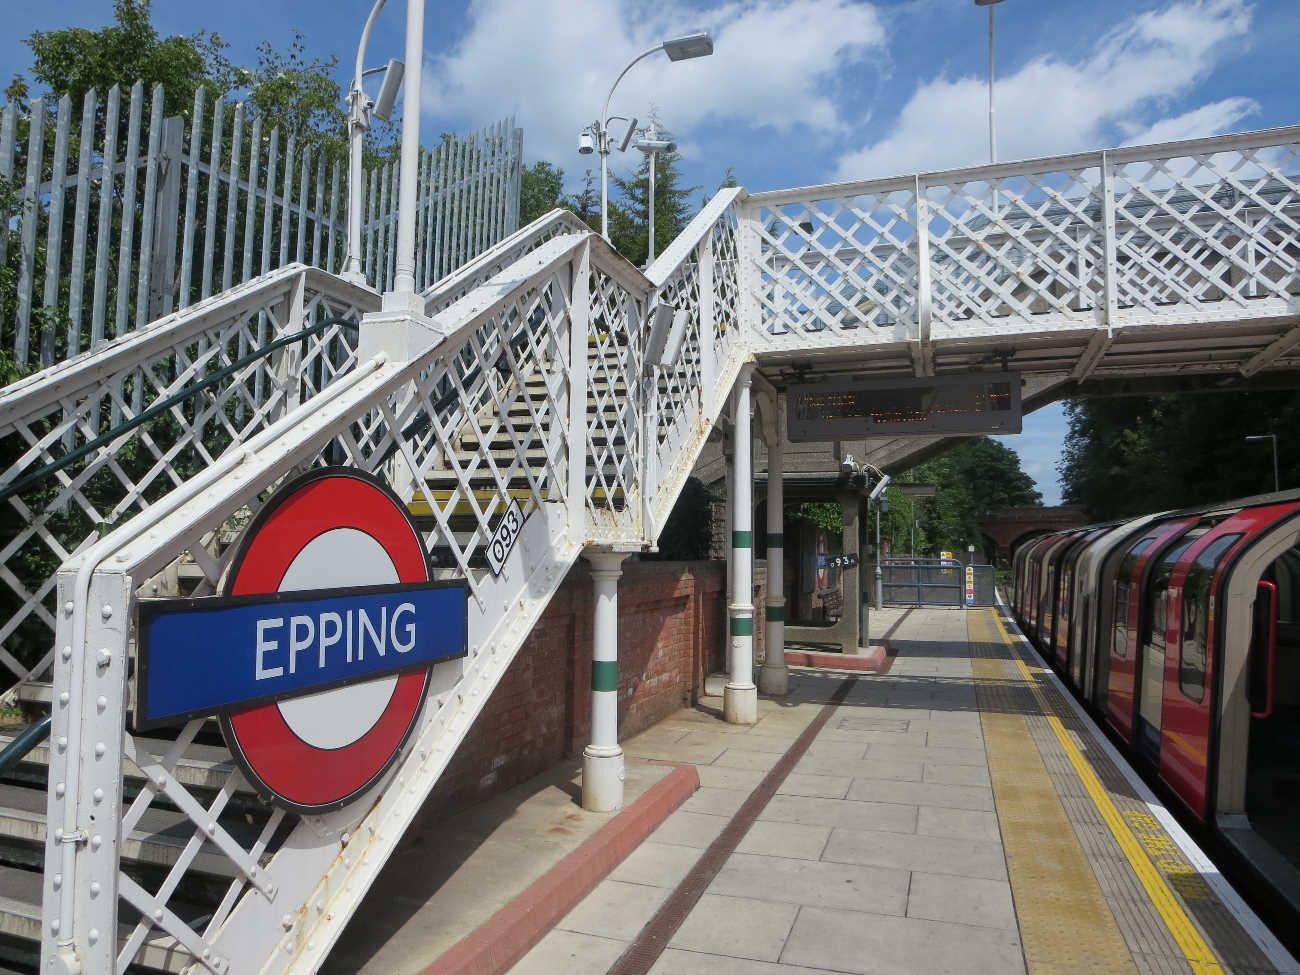 Epping Ongar Railway, Epping station